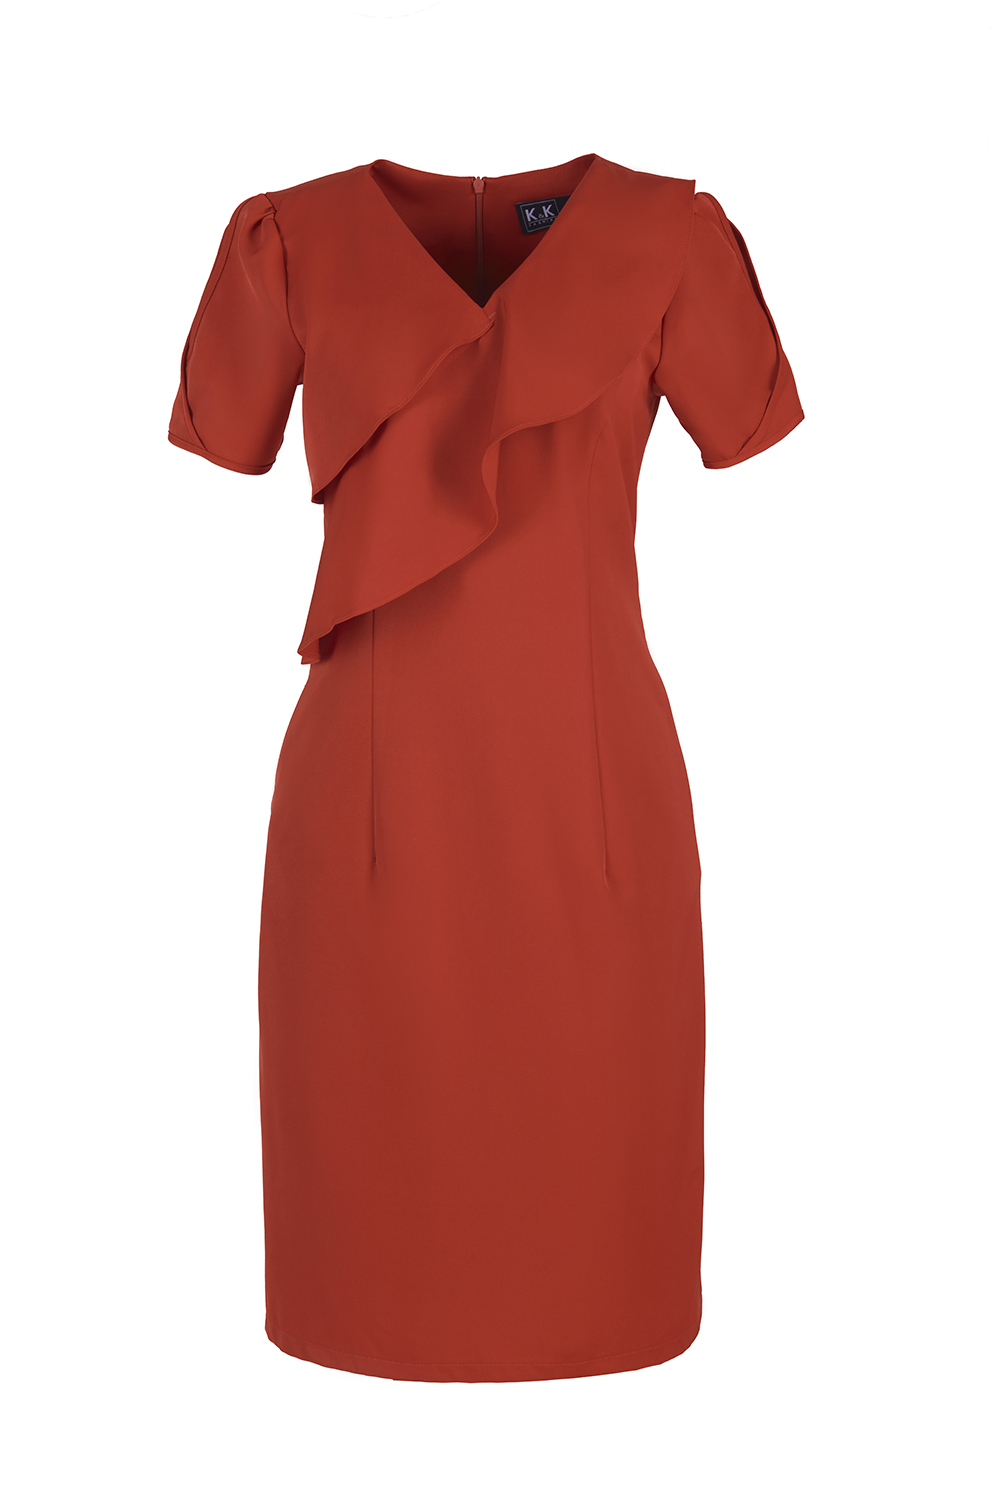 Đầm ôm nhẹ cổ chữ V phối bèo nhún KK105-23 | Thời trang công sở K&K Fashion